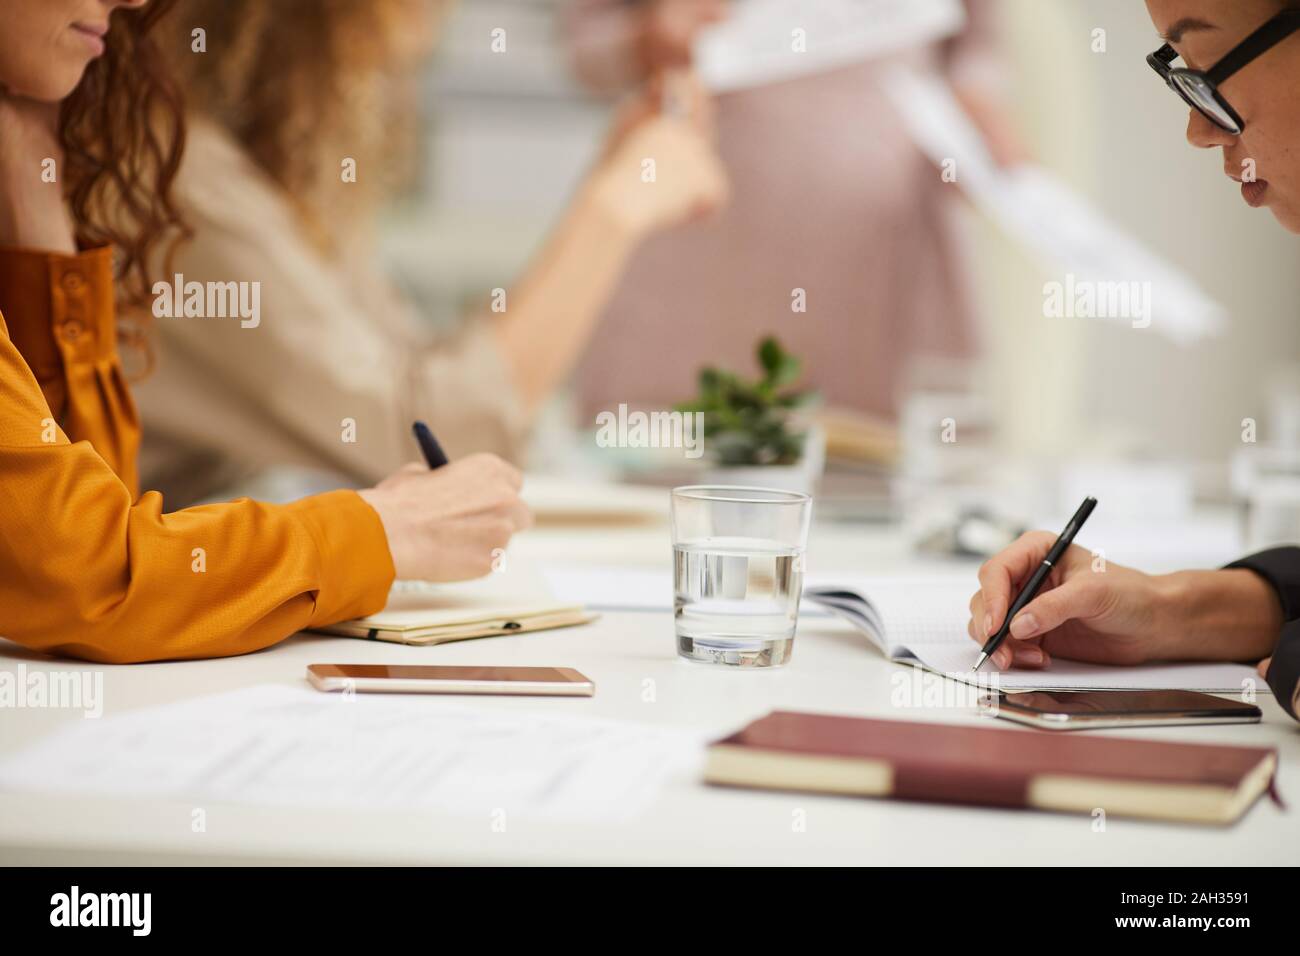 Les femmes pratiquant au cours de réflexion méconnaissable réunion d'affaires, plan horizontal Banque D'Images